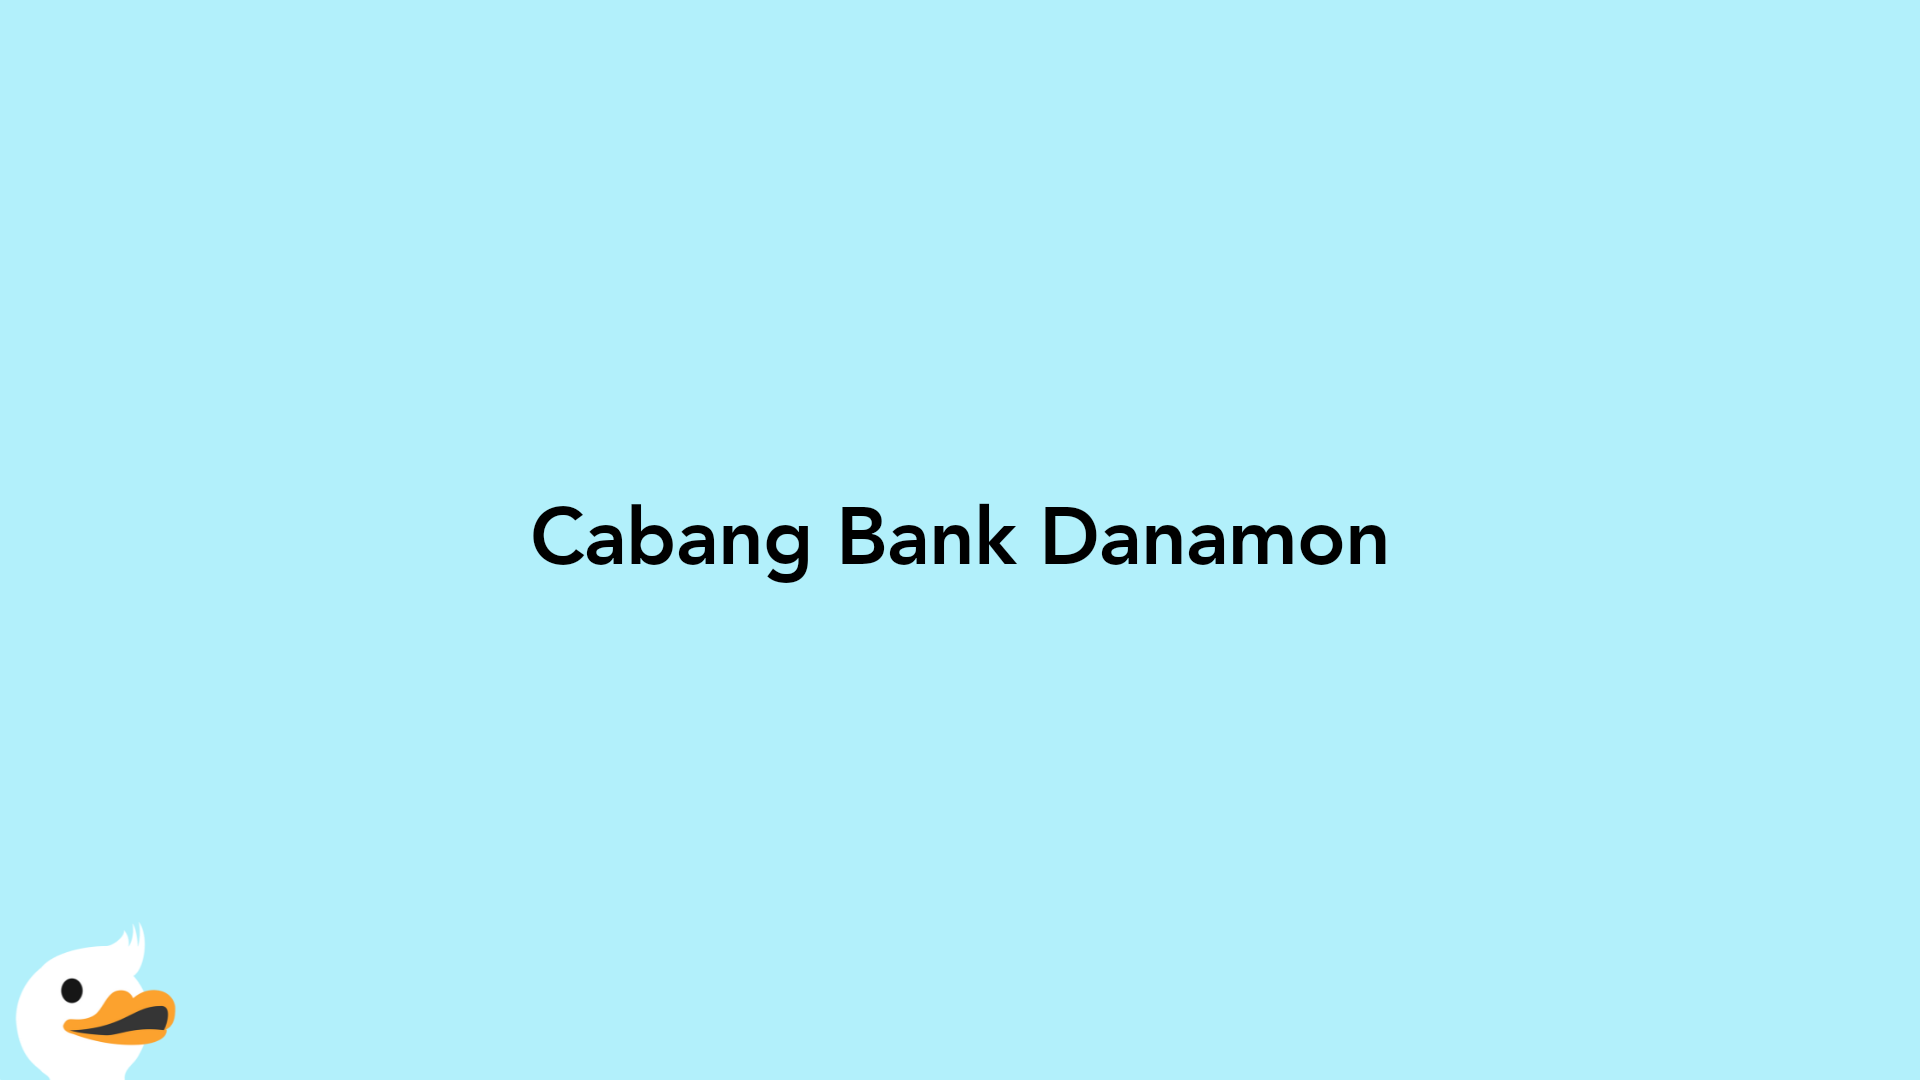 Cabang Bank Danamon